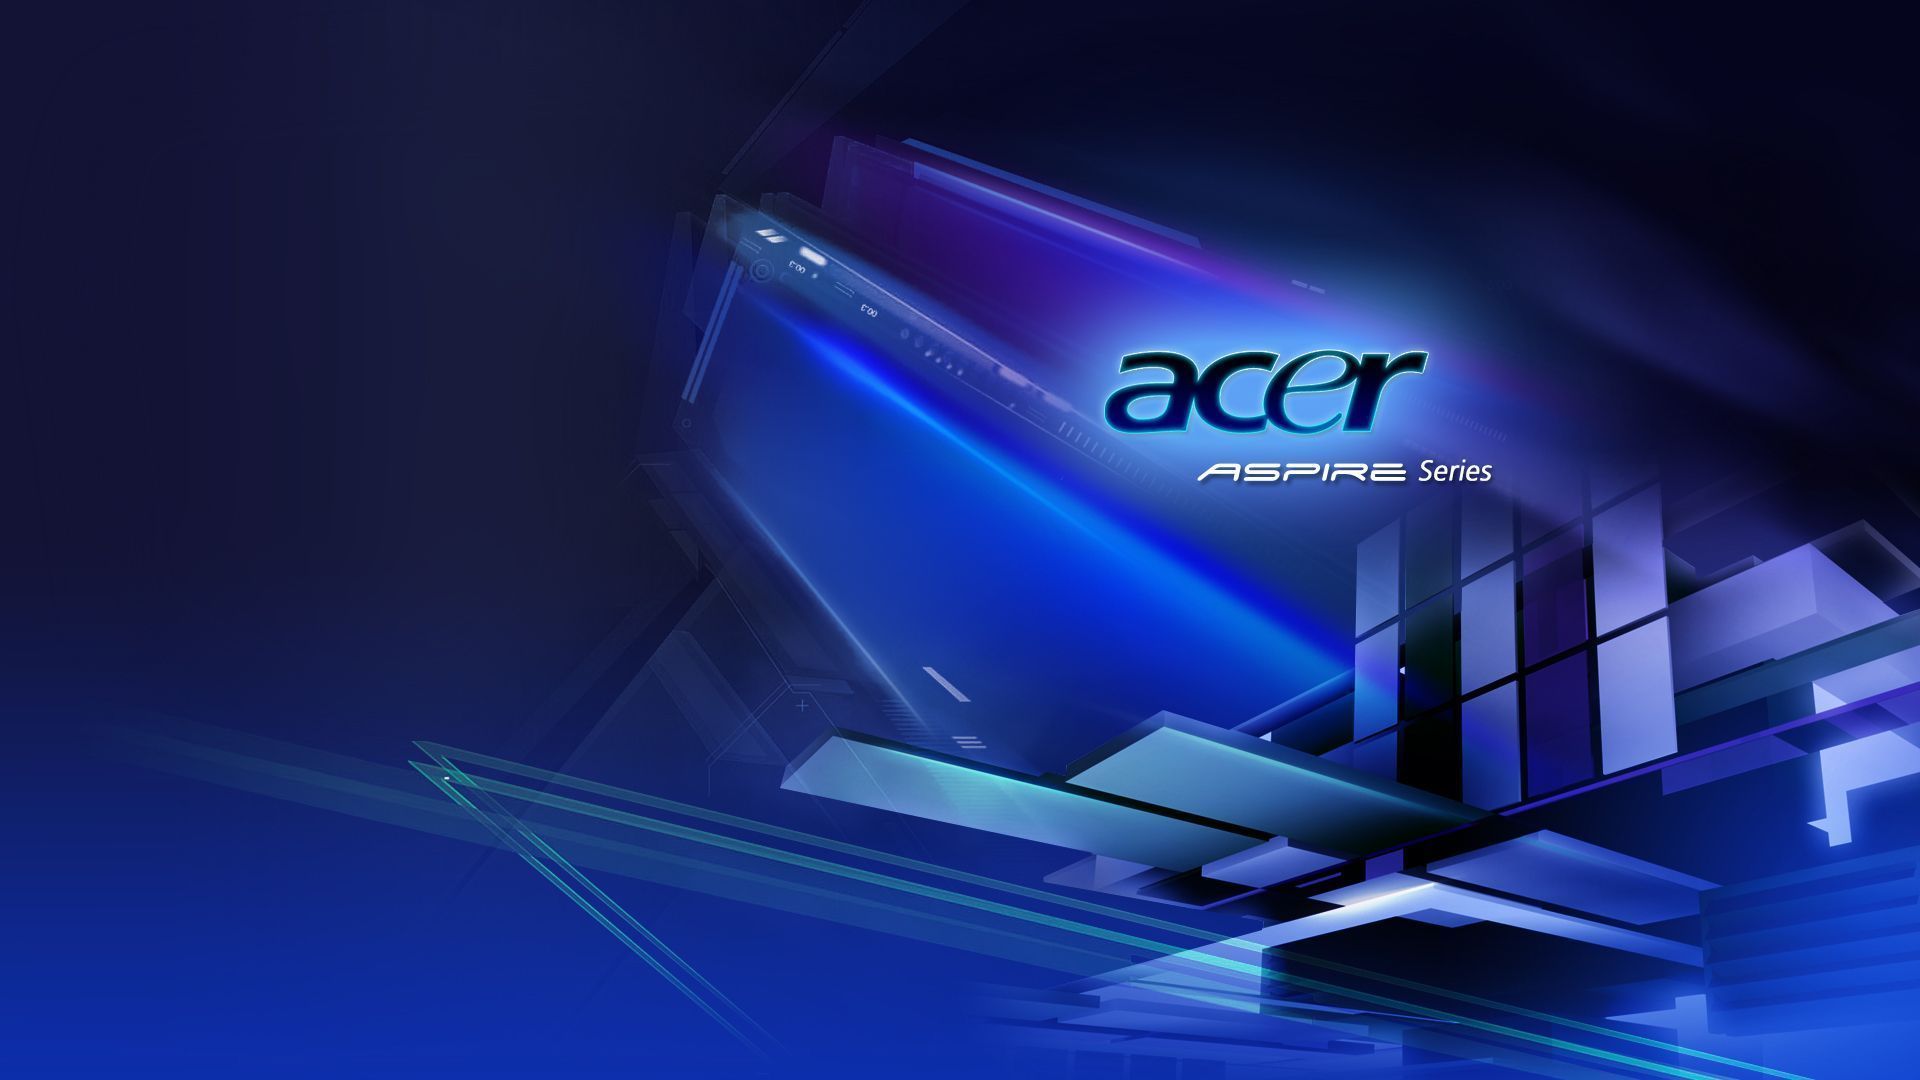 Acer Desktop Wallpaper: Image, Category